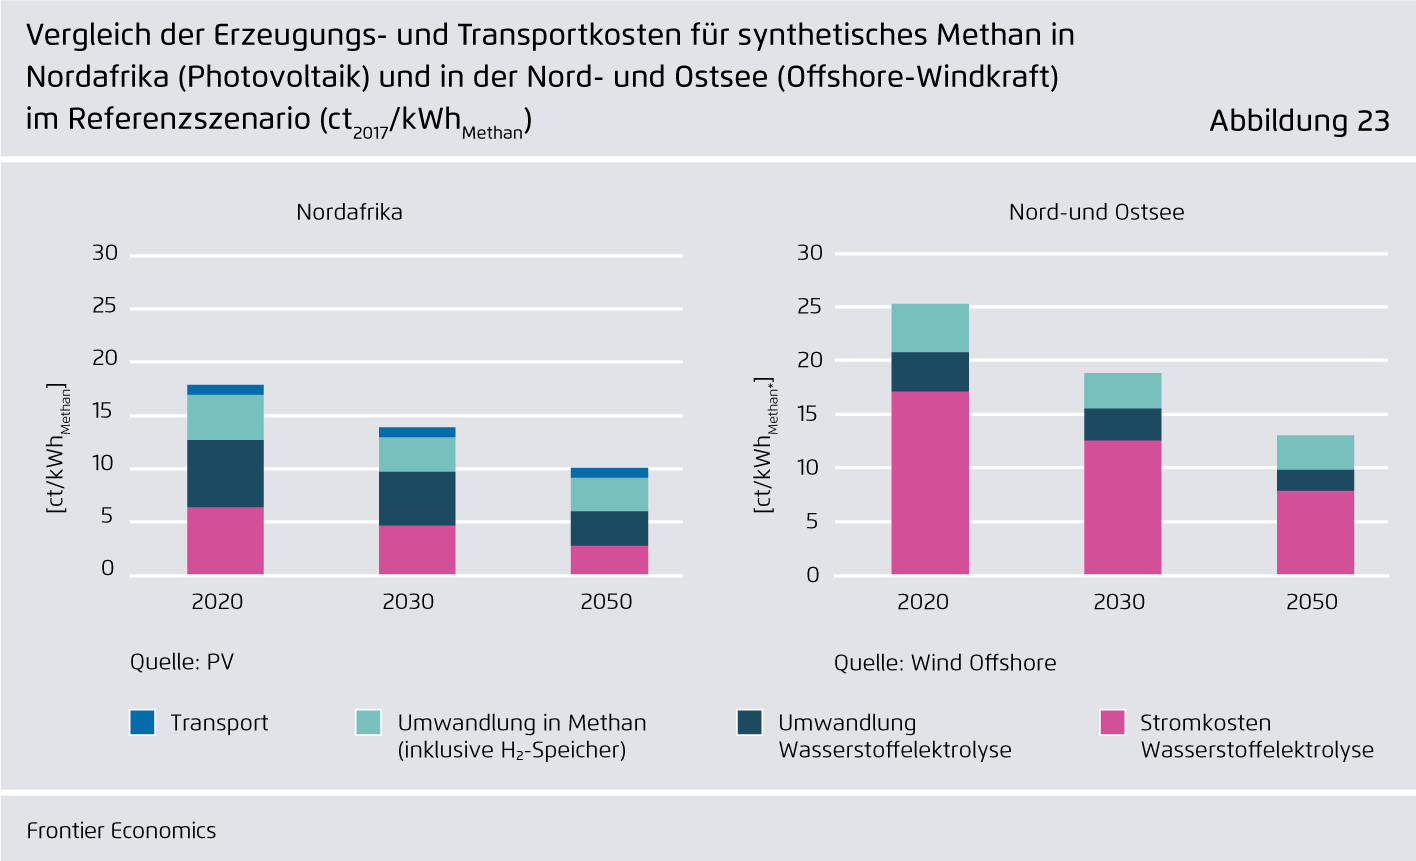 Preview for Vergleich der Erzeugungs- und Transportkosten für synthetisches Methan in Nordafrika (Photovoltaik) und in der Nord- und Ostsee (Offshore-Windkraft) im Referenzszenario (ct2017/kWhMethan)